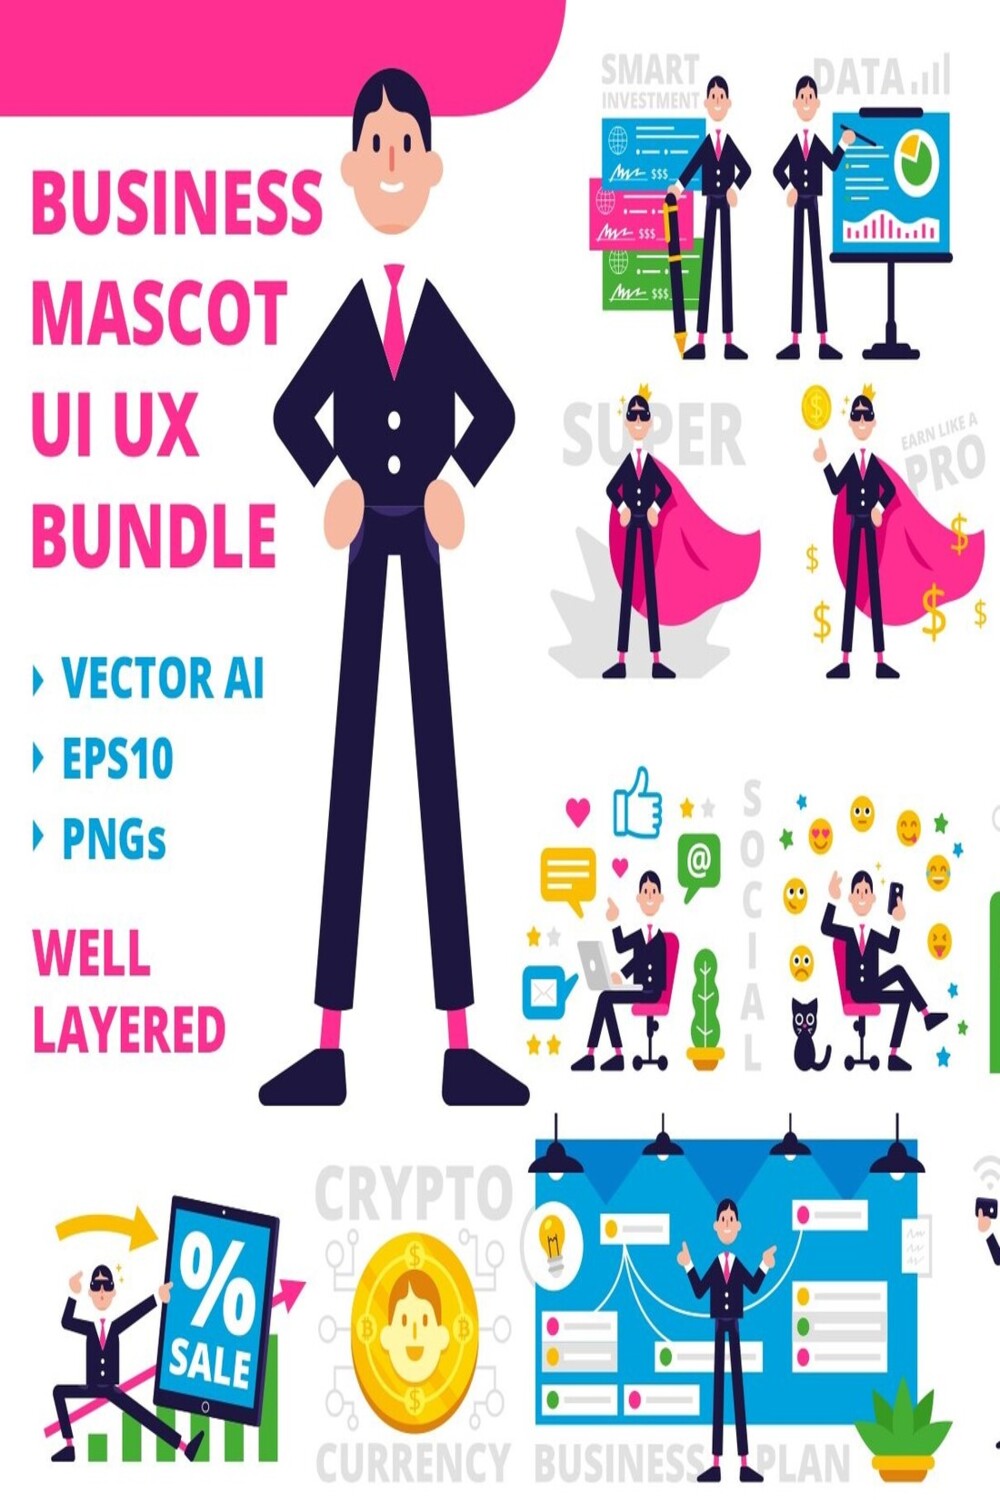 Business Mascot UI UX Bundle - pinterest image preview.